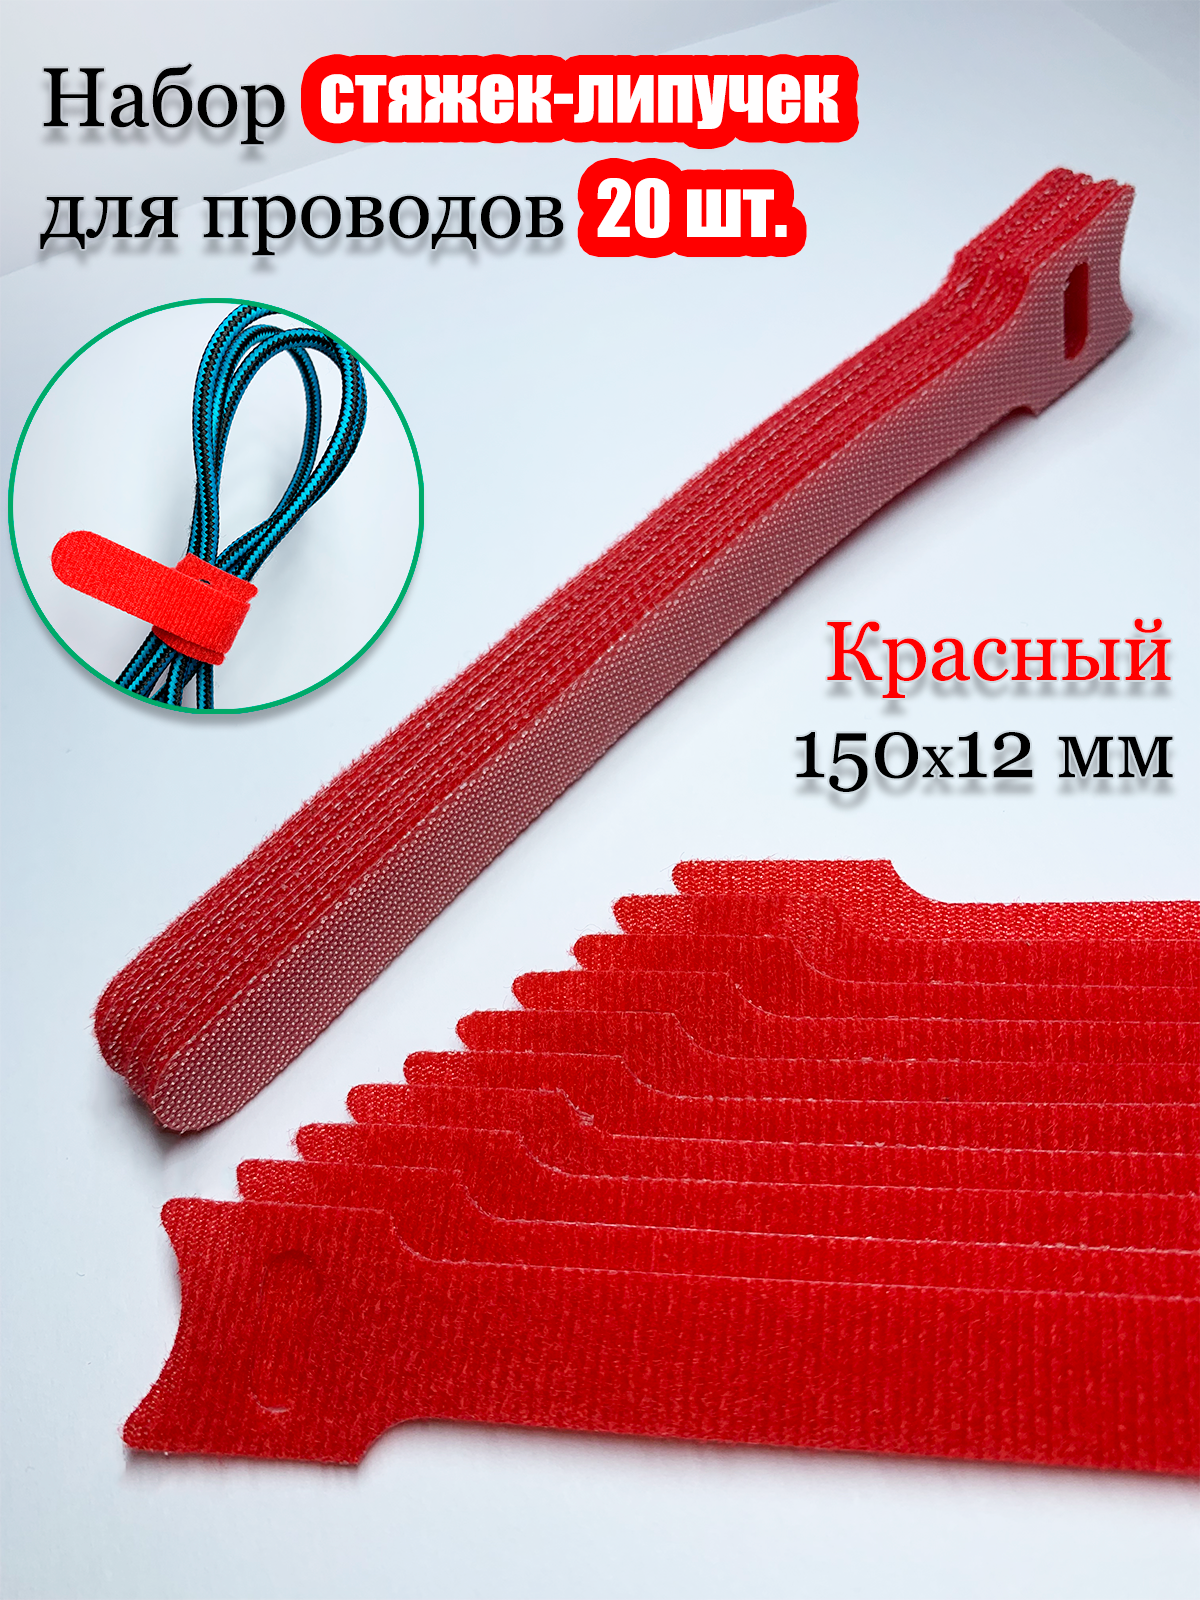 Многоразовая стяжка-липучка для проводов и кабелей 150х12 мм. Цвет красный. 20 шт.